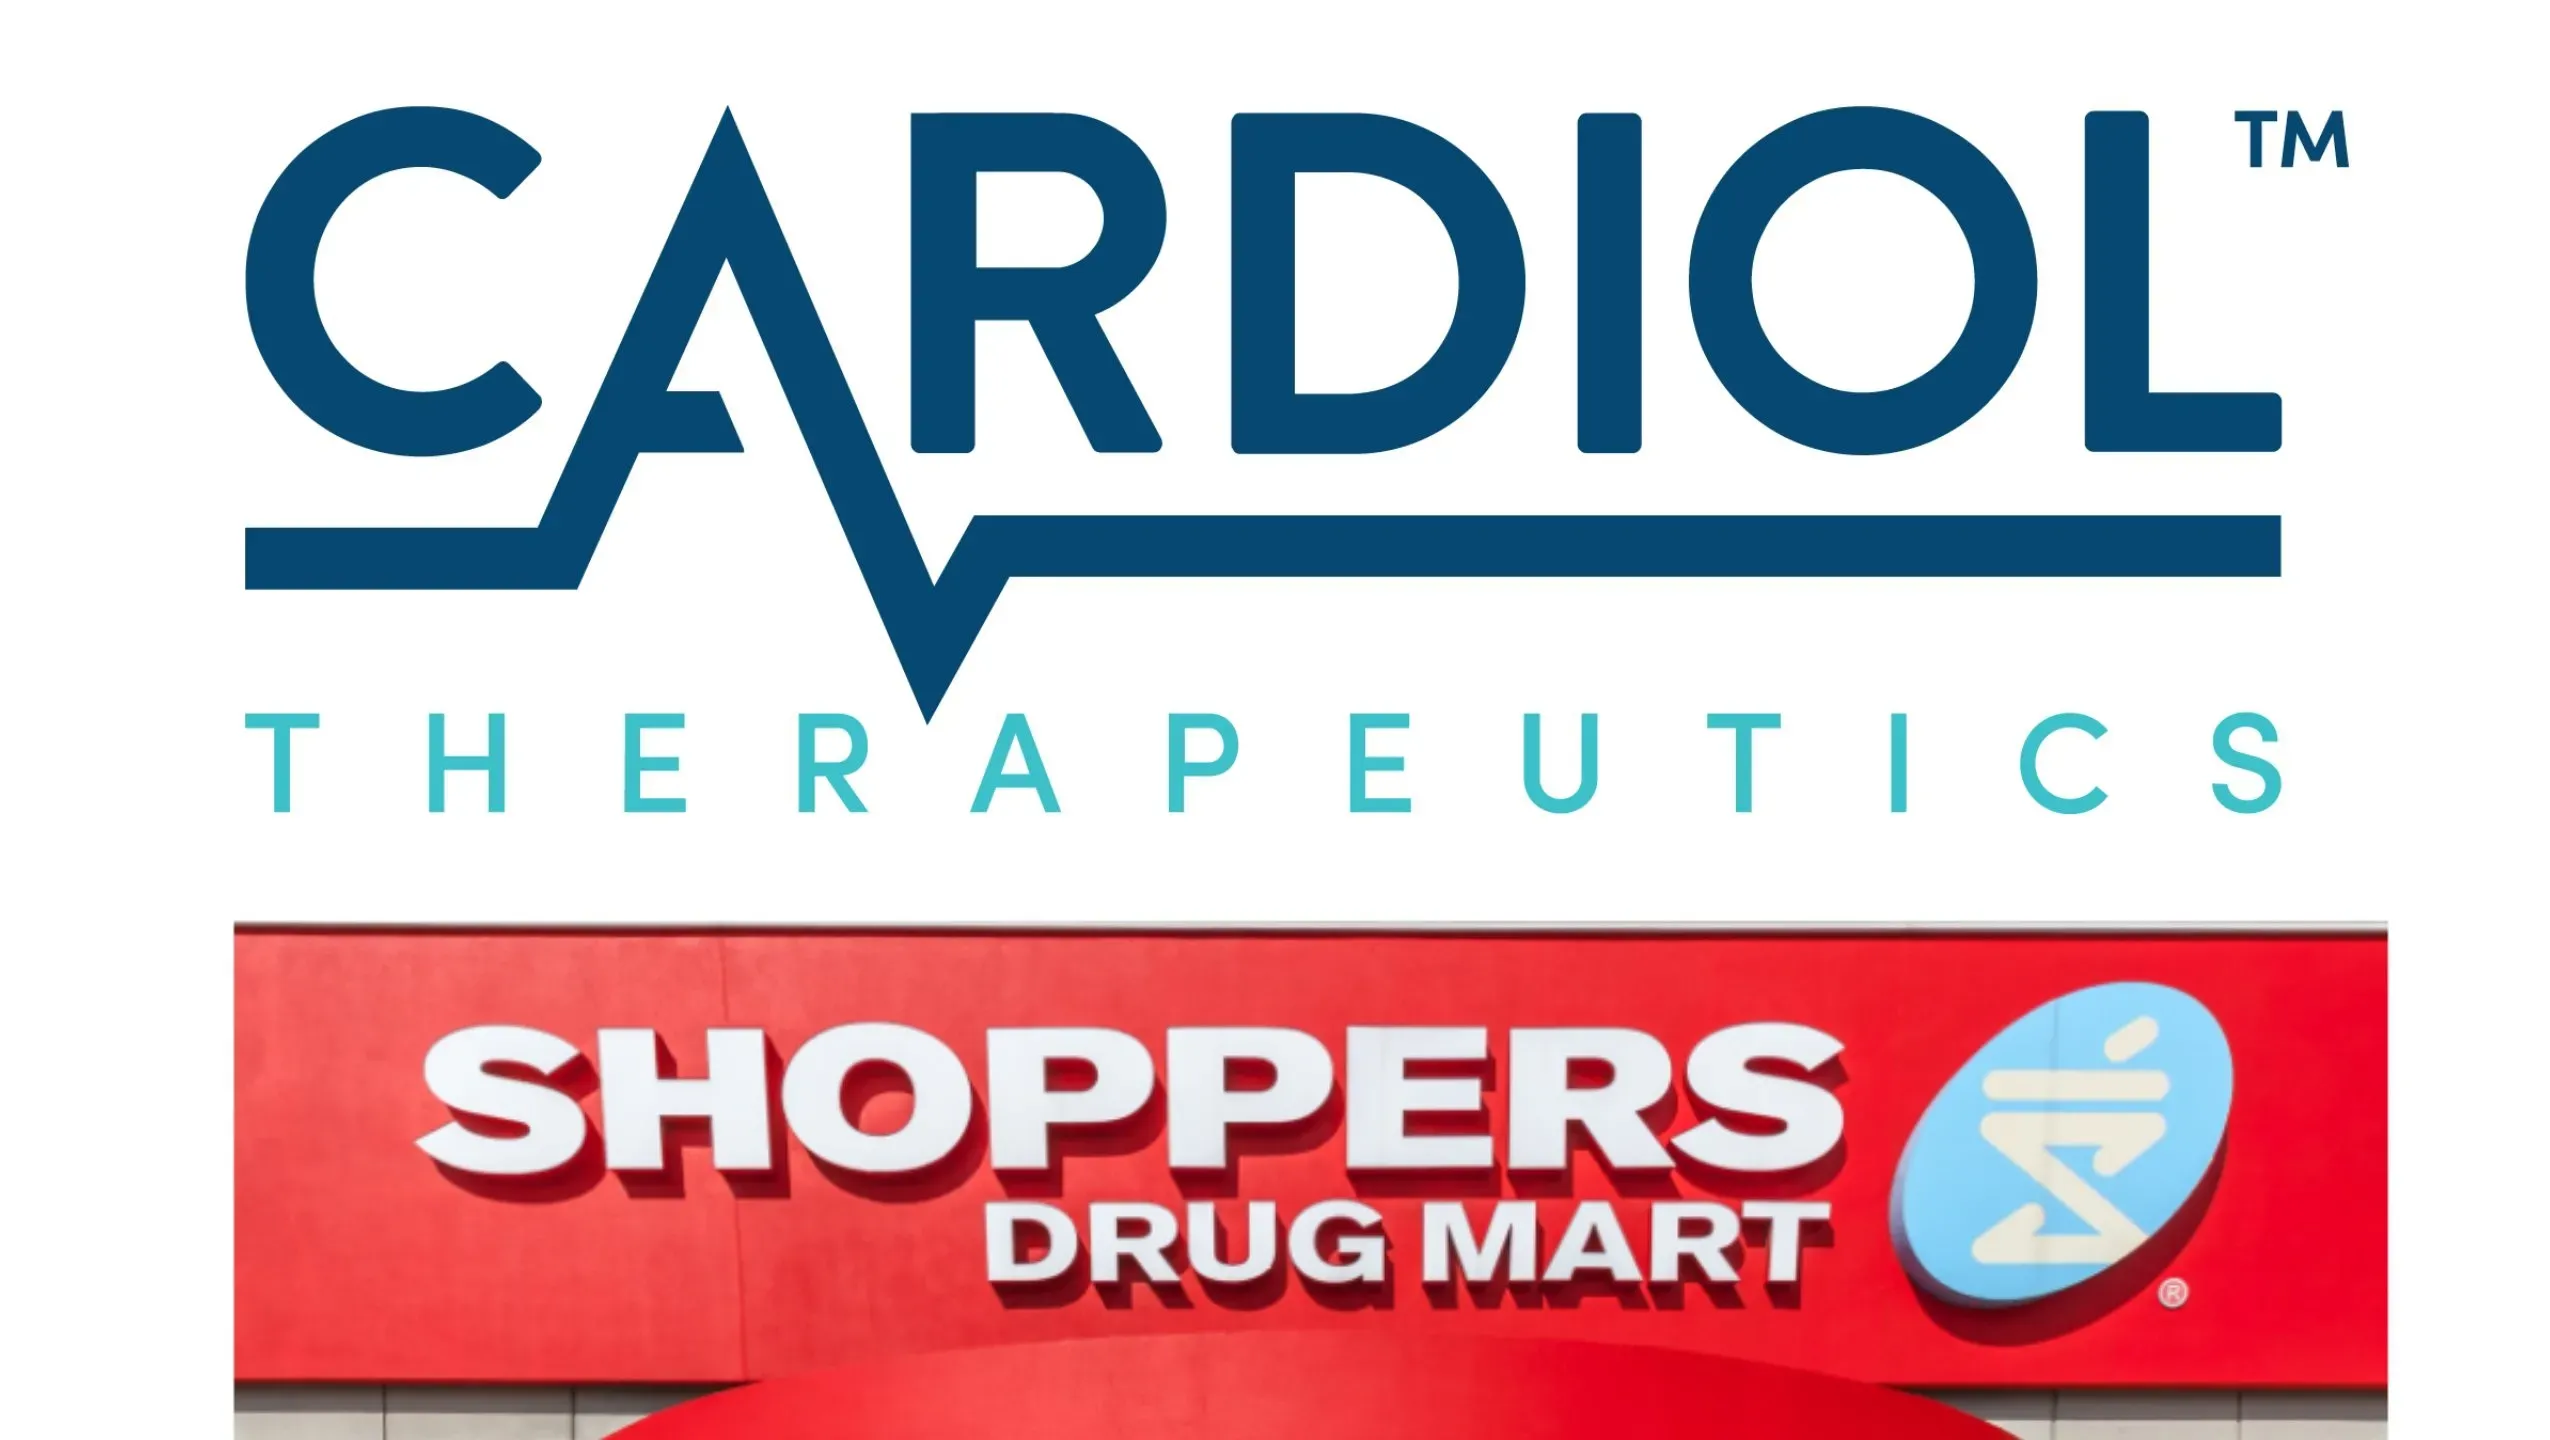 Cordinox foro - en farmacias - donde comprar - comentarios - qué es esto - precio - ingredientes - opiniones - México.